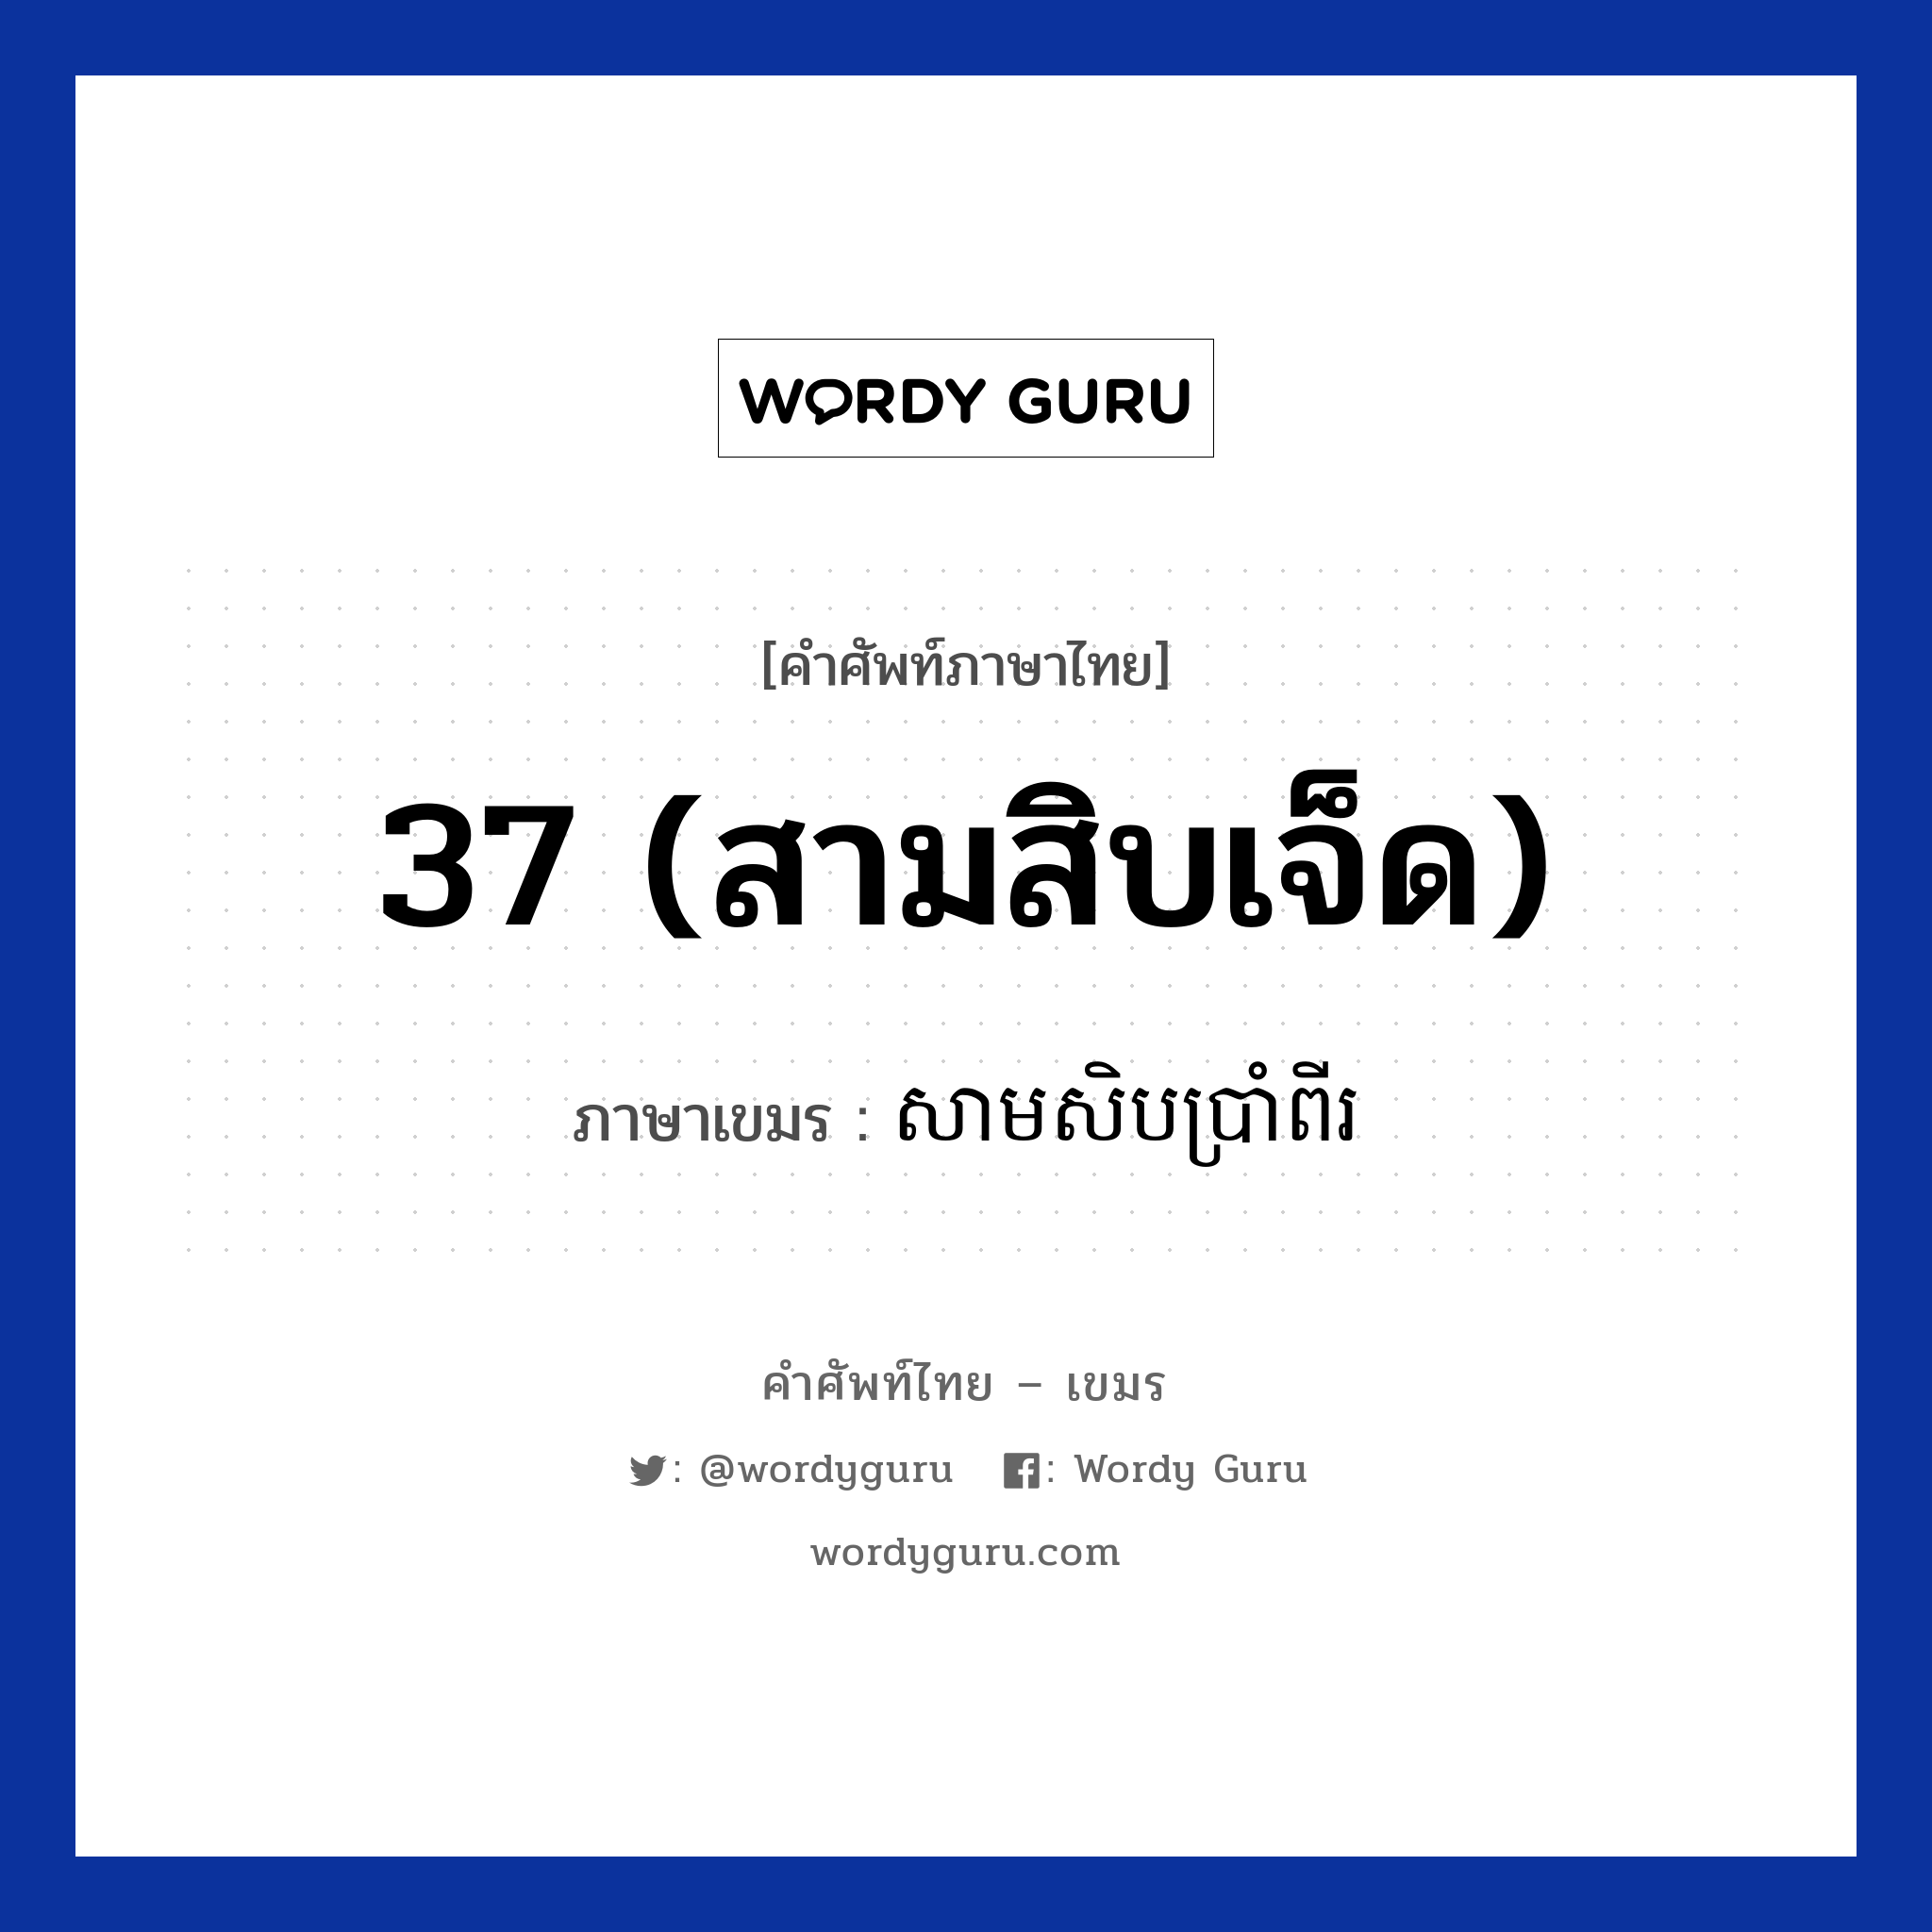 សាមសិបប្រាំពីរ ภาษาไทย?, คำศัพท์ภาษาไทย - เขมร សាមសិបប្រាំពីរ ภาษาเขมร 37 (สามสิบเจ็ด) หมวด การนับเลข Samsibbrampii หมวด การนับเลข